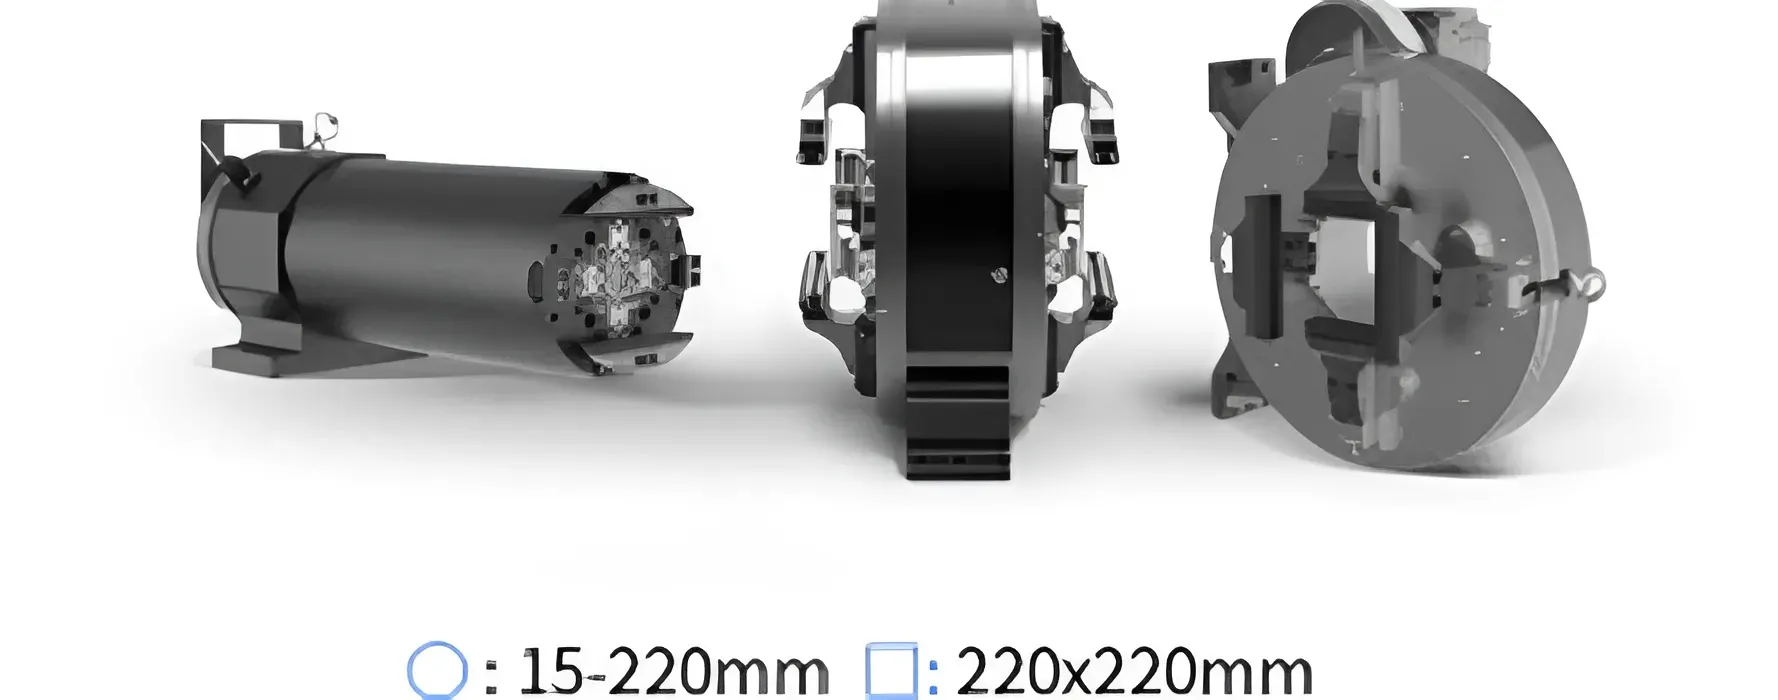 Универсальный пневматический патрон станок лазерной резки круглых и профильных труб LX-K22S от компании LongxinLaser